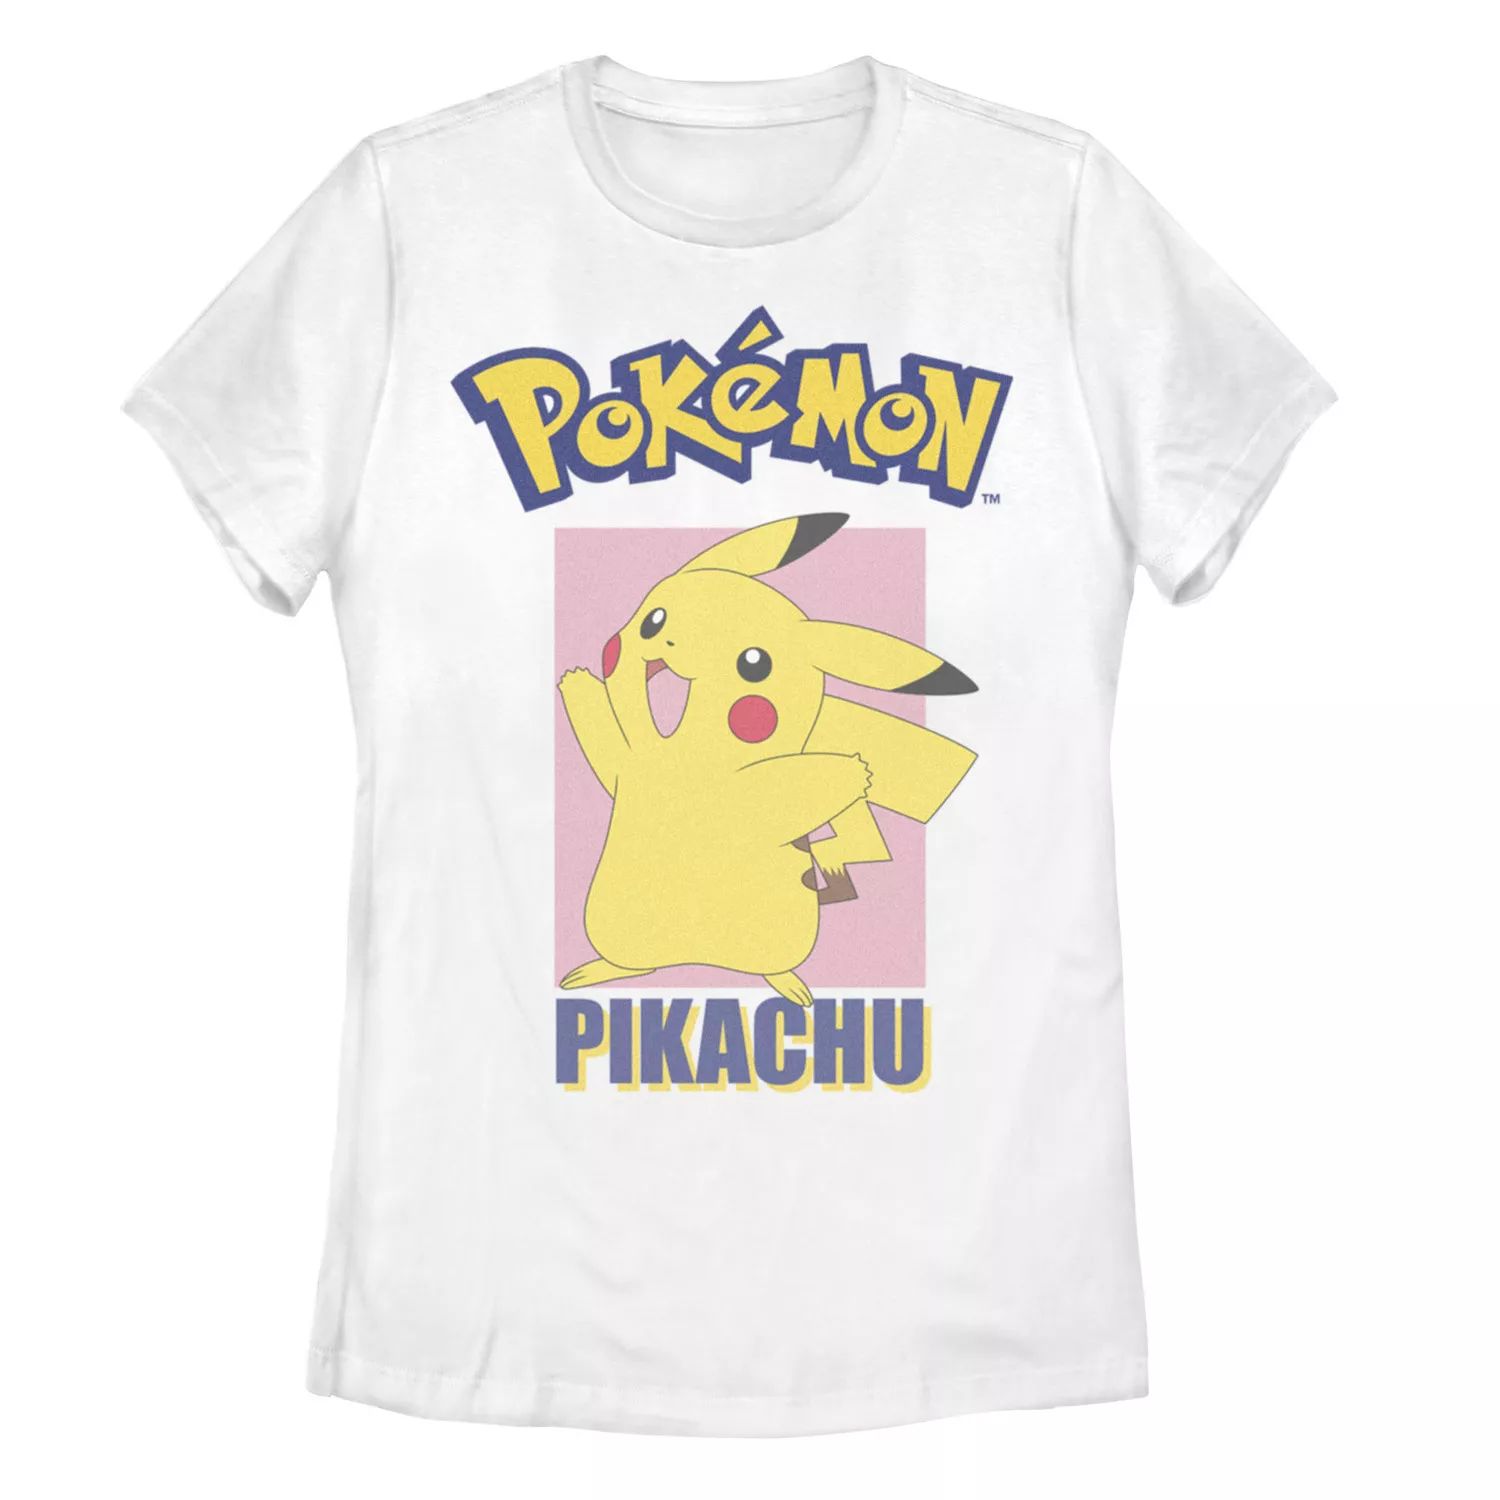 Детская футболка с графическим рисунком Pokemon Pikachu Pose Pose Licensed Character